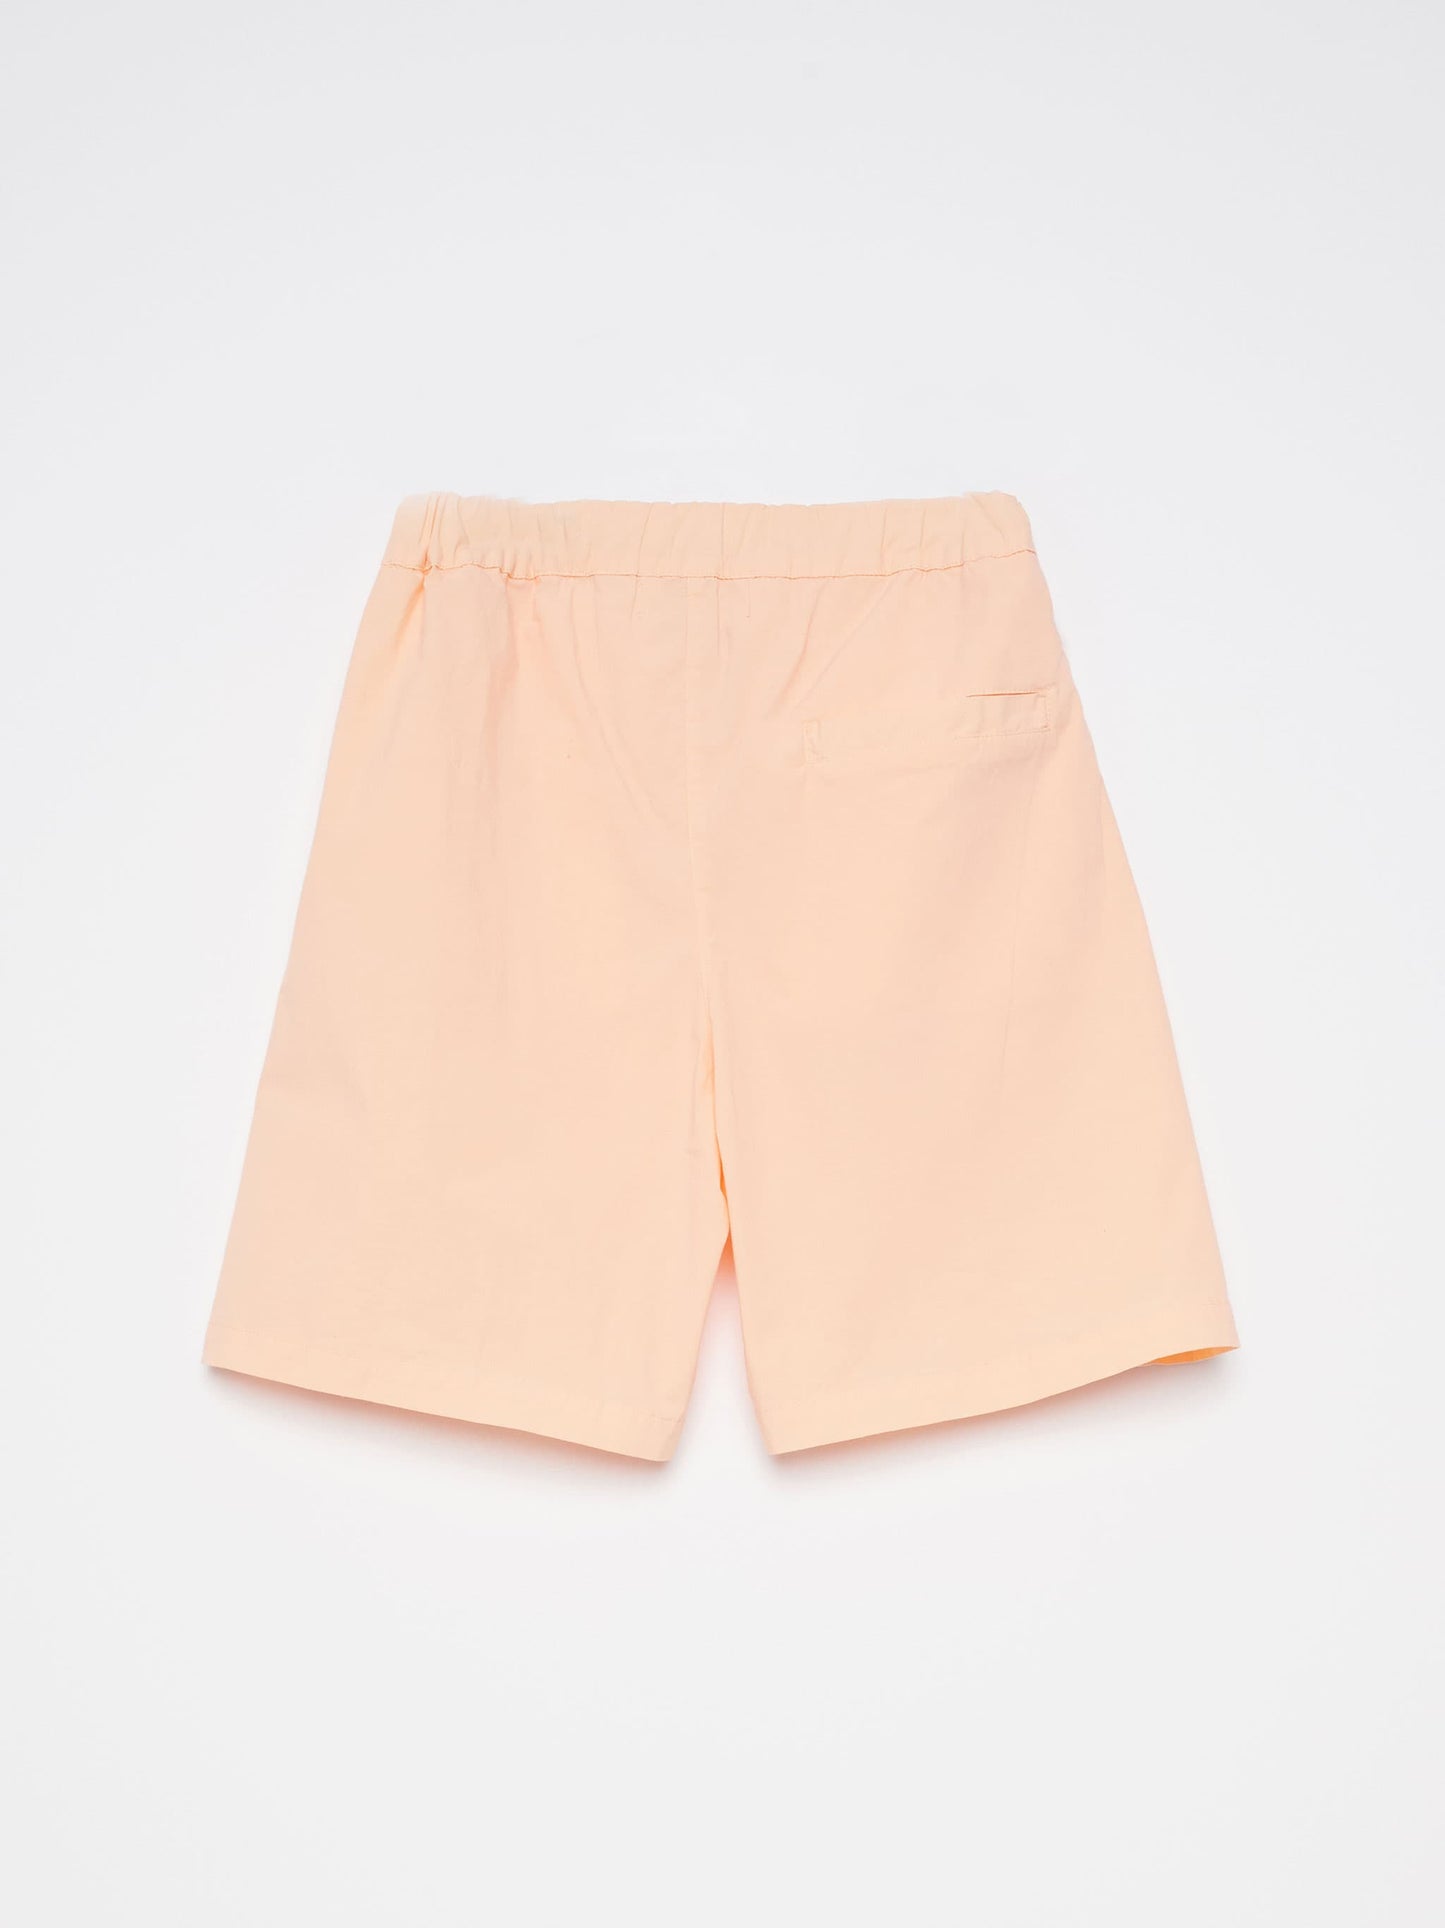 Shorts nº06 Soft Peach